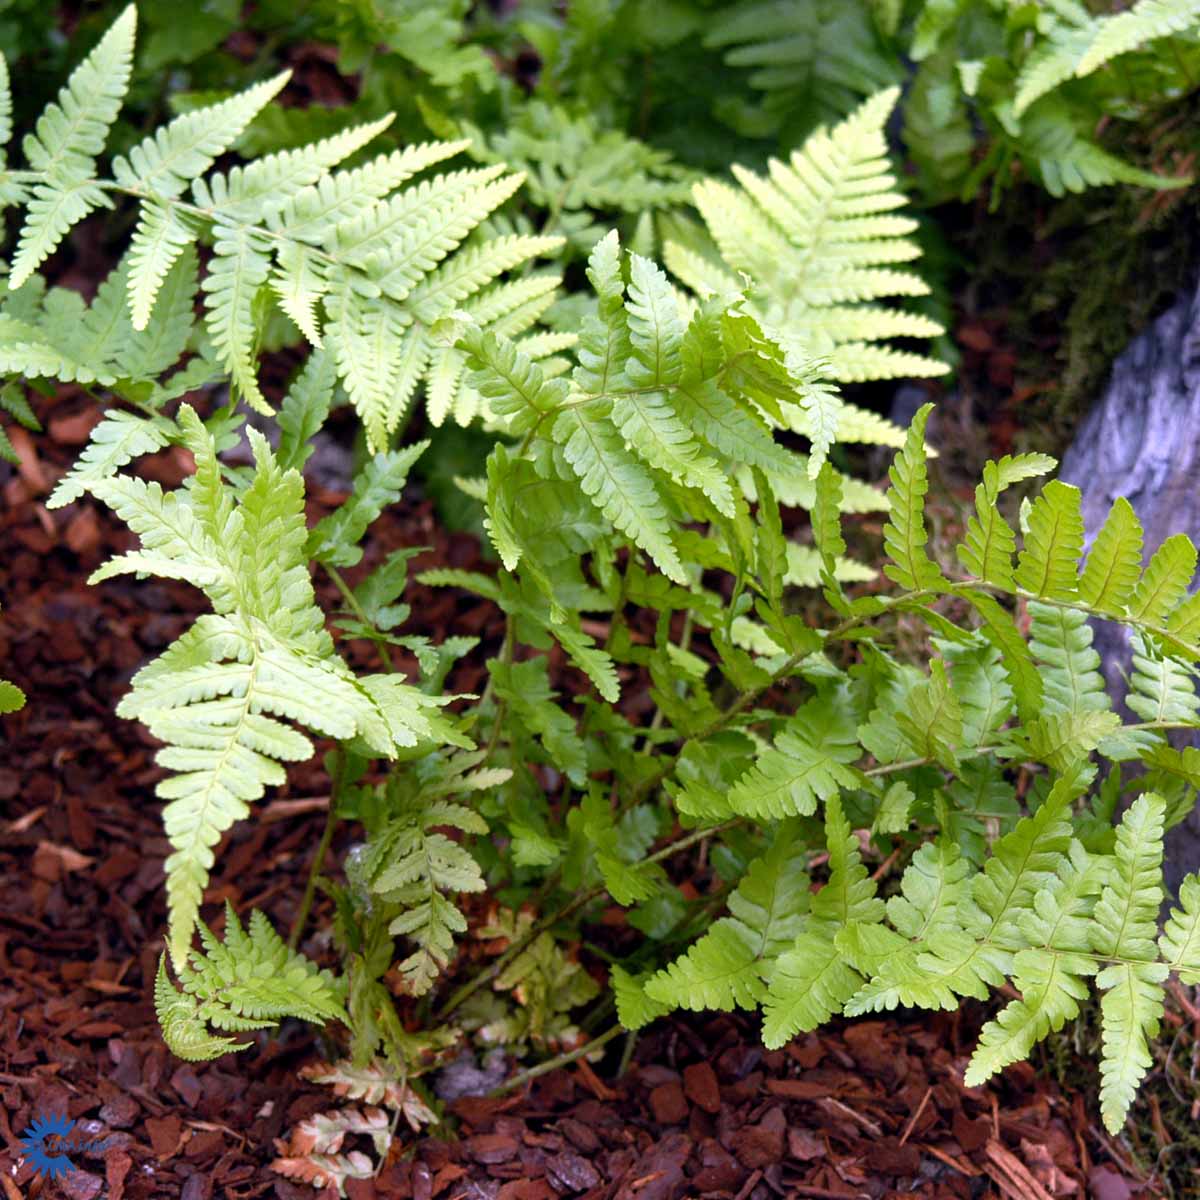 Mangeløv bregne — Dryopteris Filix-mas her vokser den i bark hvilket fremhæver dens flotte grønne blade